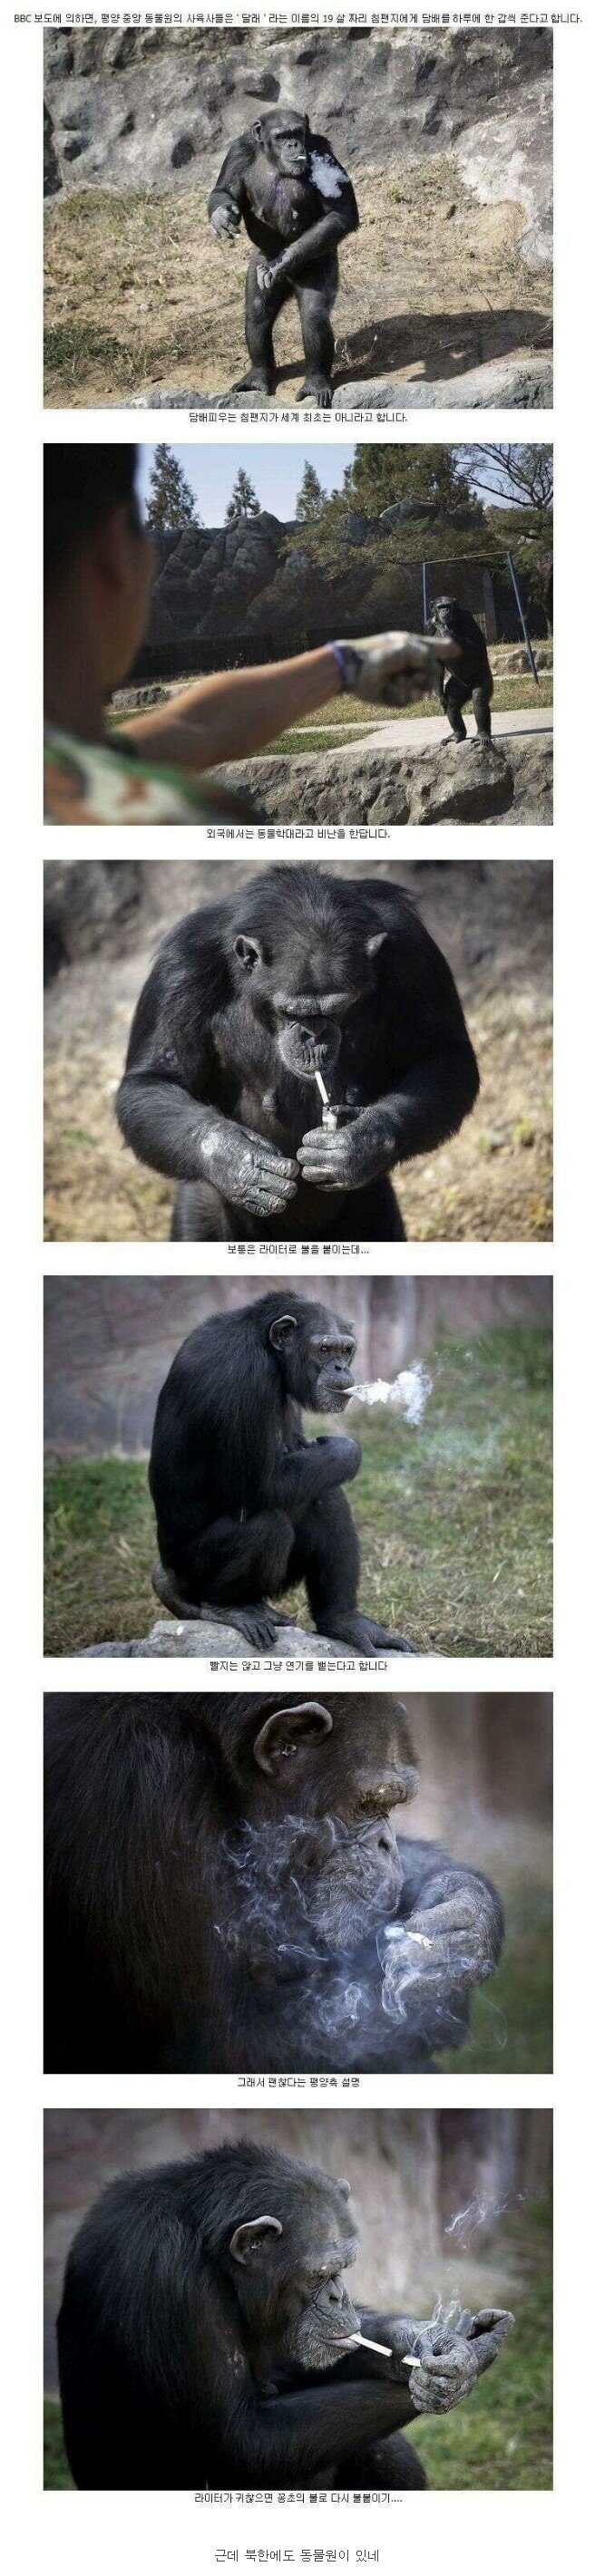 북한 동물원의 담배 피우는 침팬지